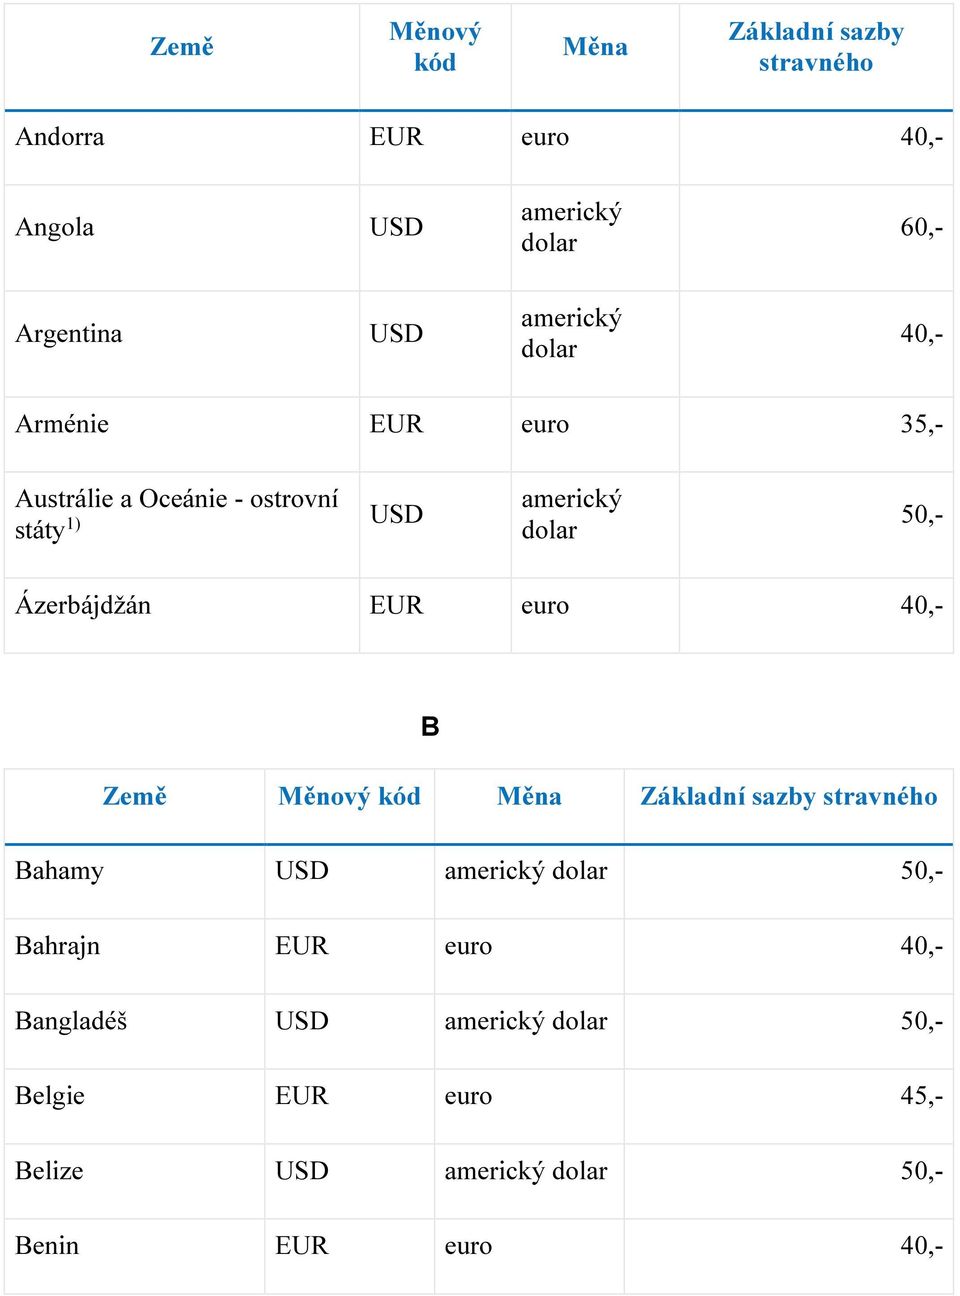 Ázerbájdžán EUR euro 40,- B Bahamy 50,- Bahrajn EUR euro 40,-